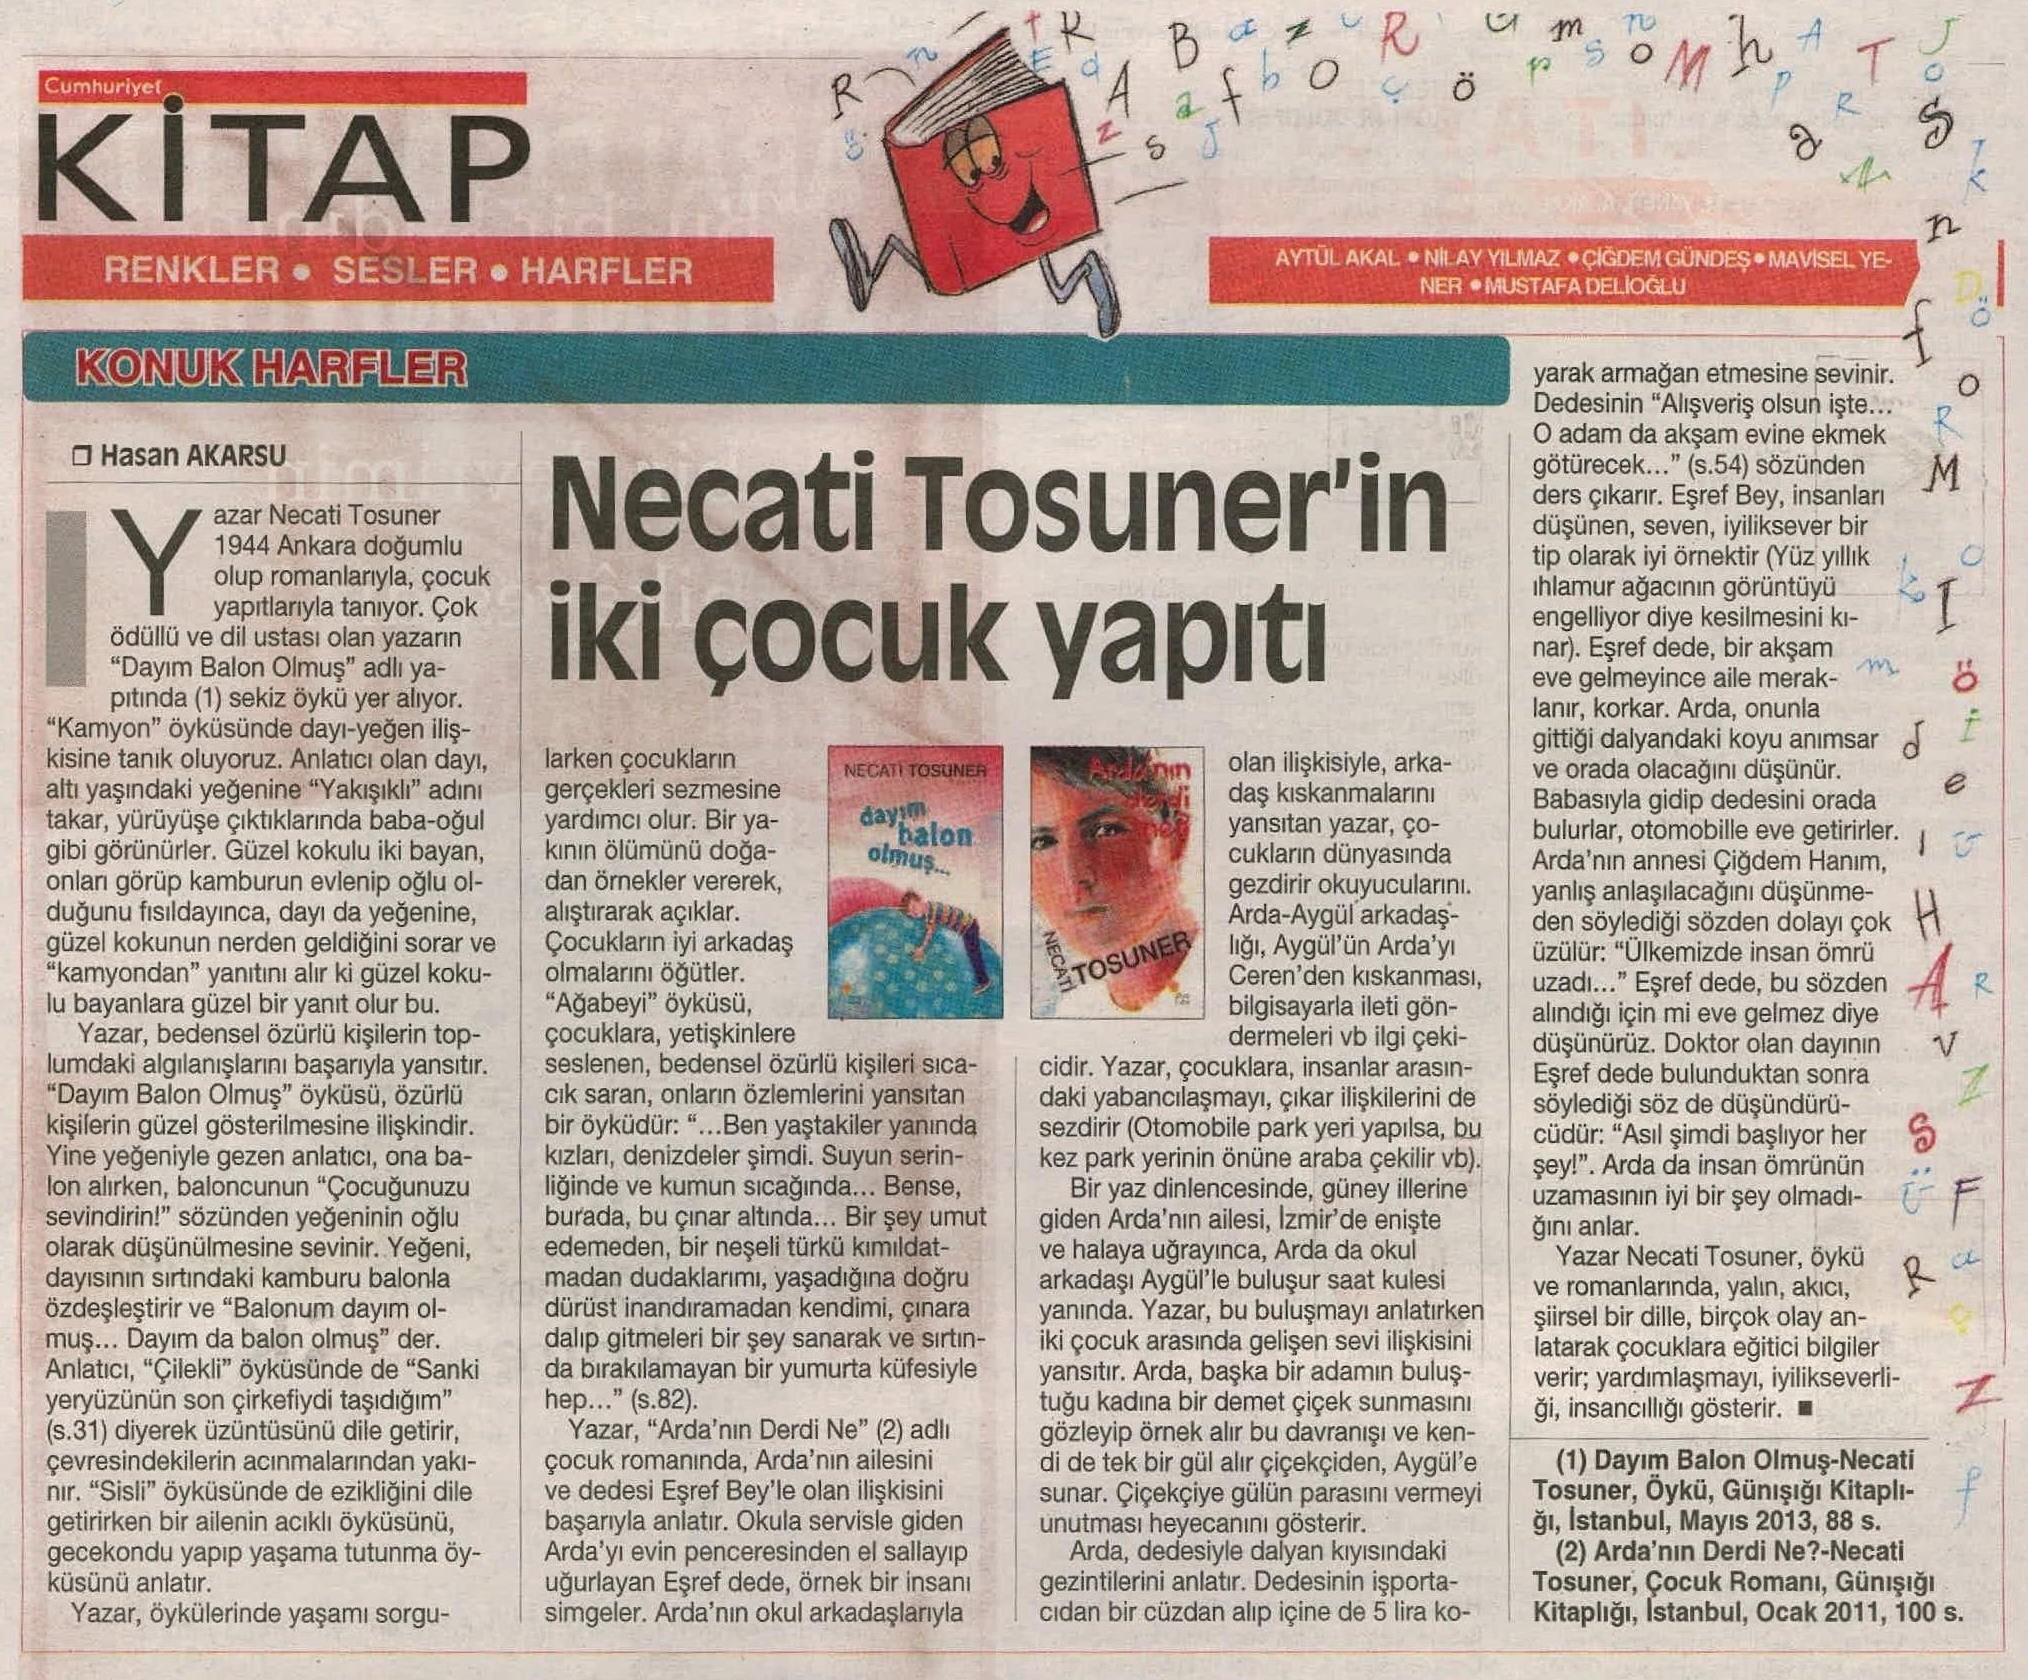 20.02.2014 Cumhuriyet Kitap